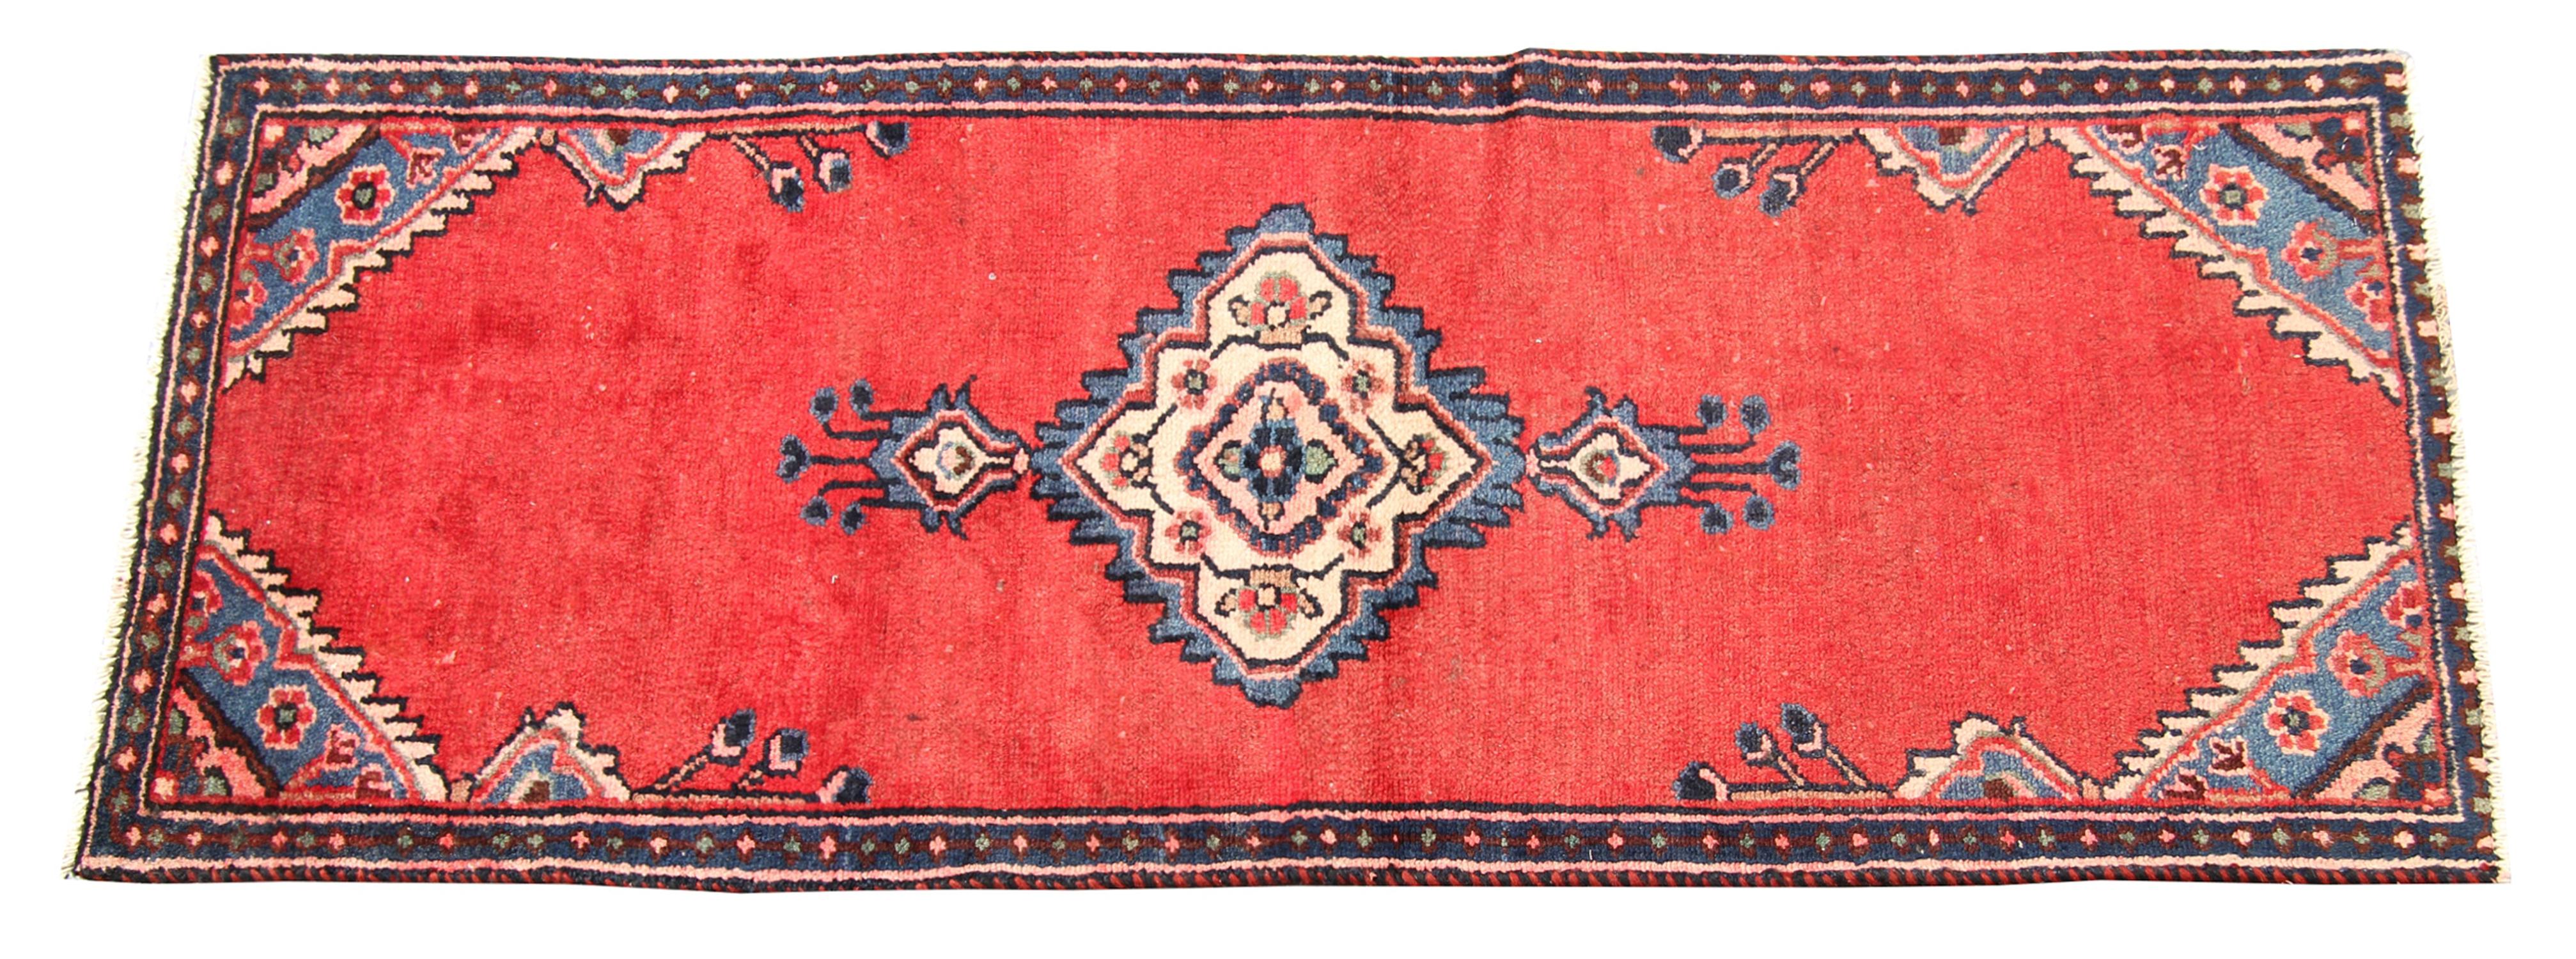 Tribal Red Wool Runner Rug Handmade Wool Oriental Area Carpet